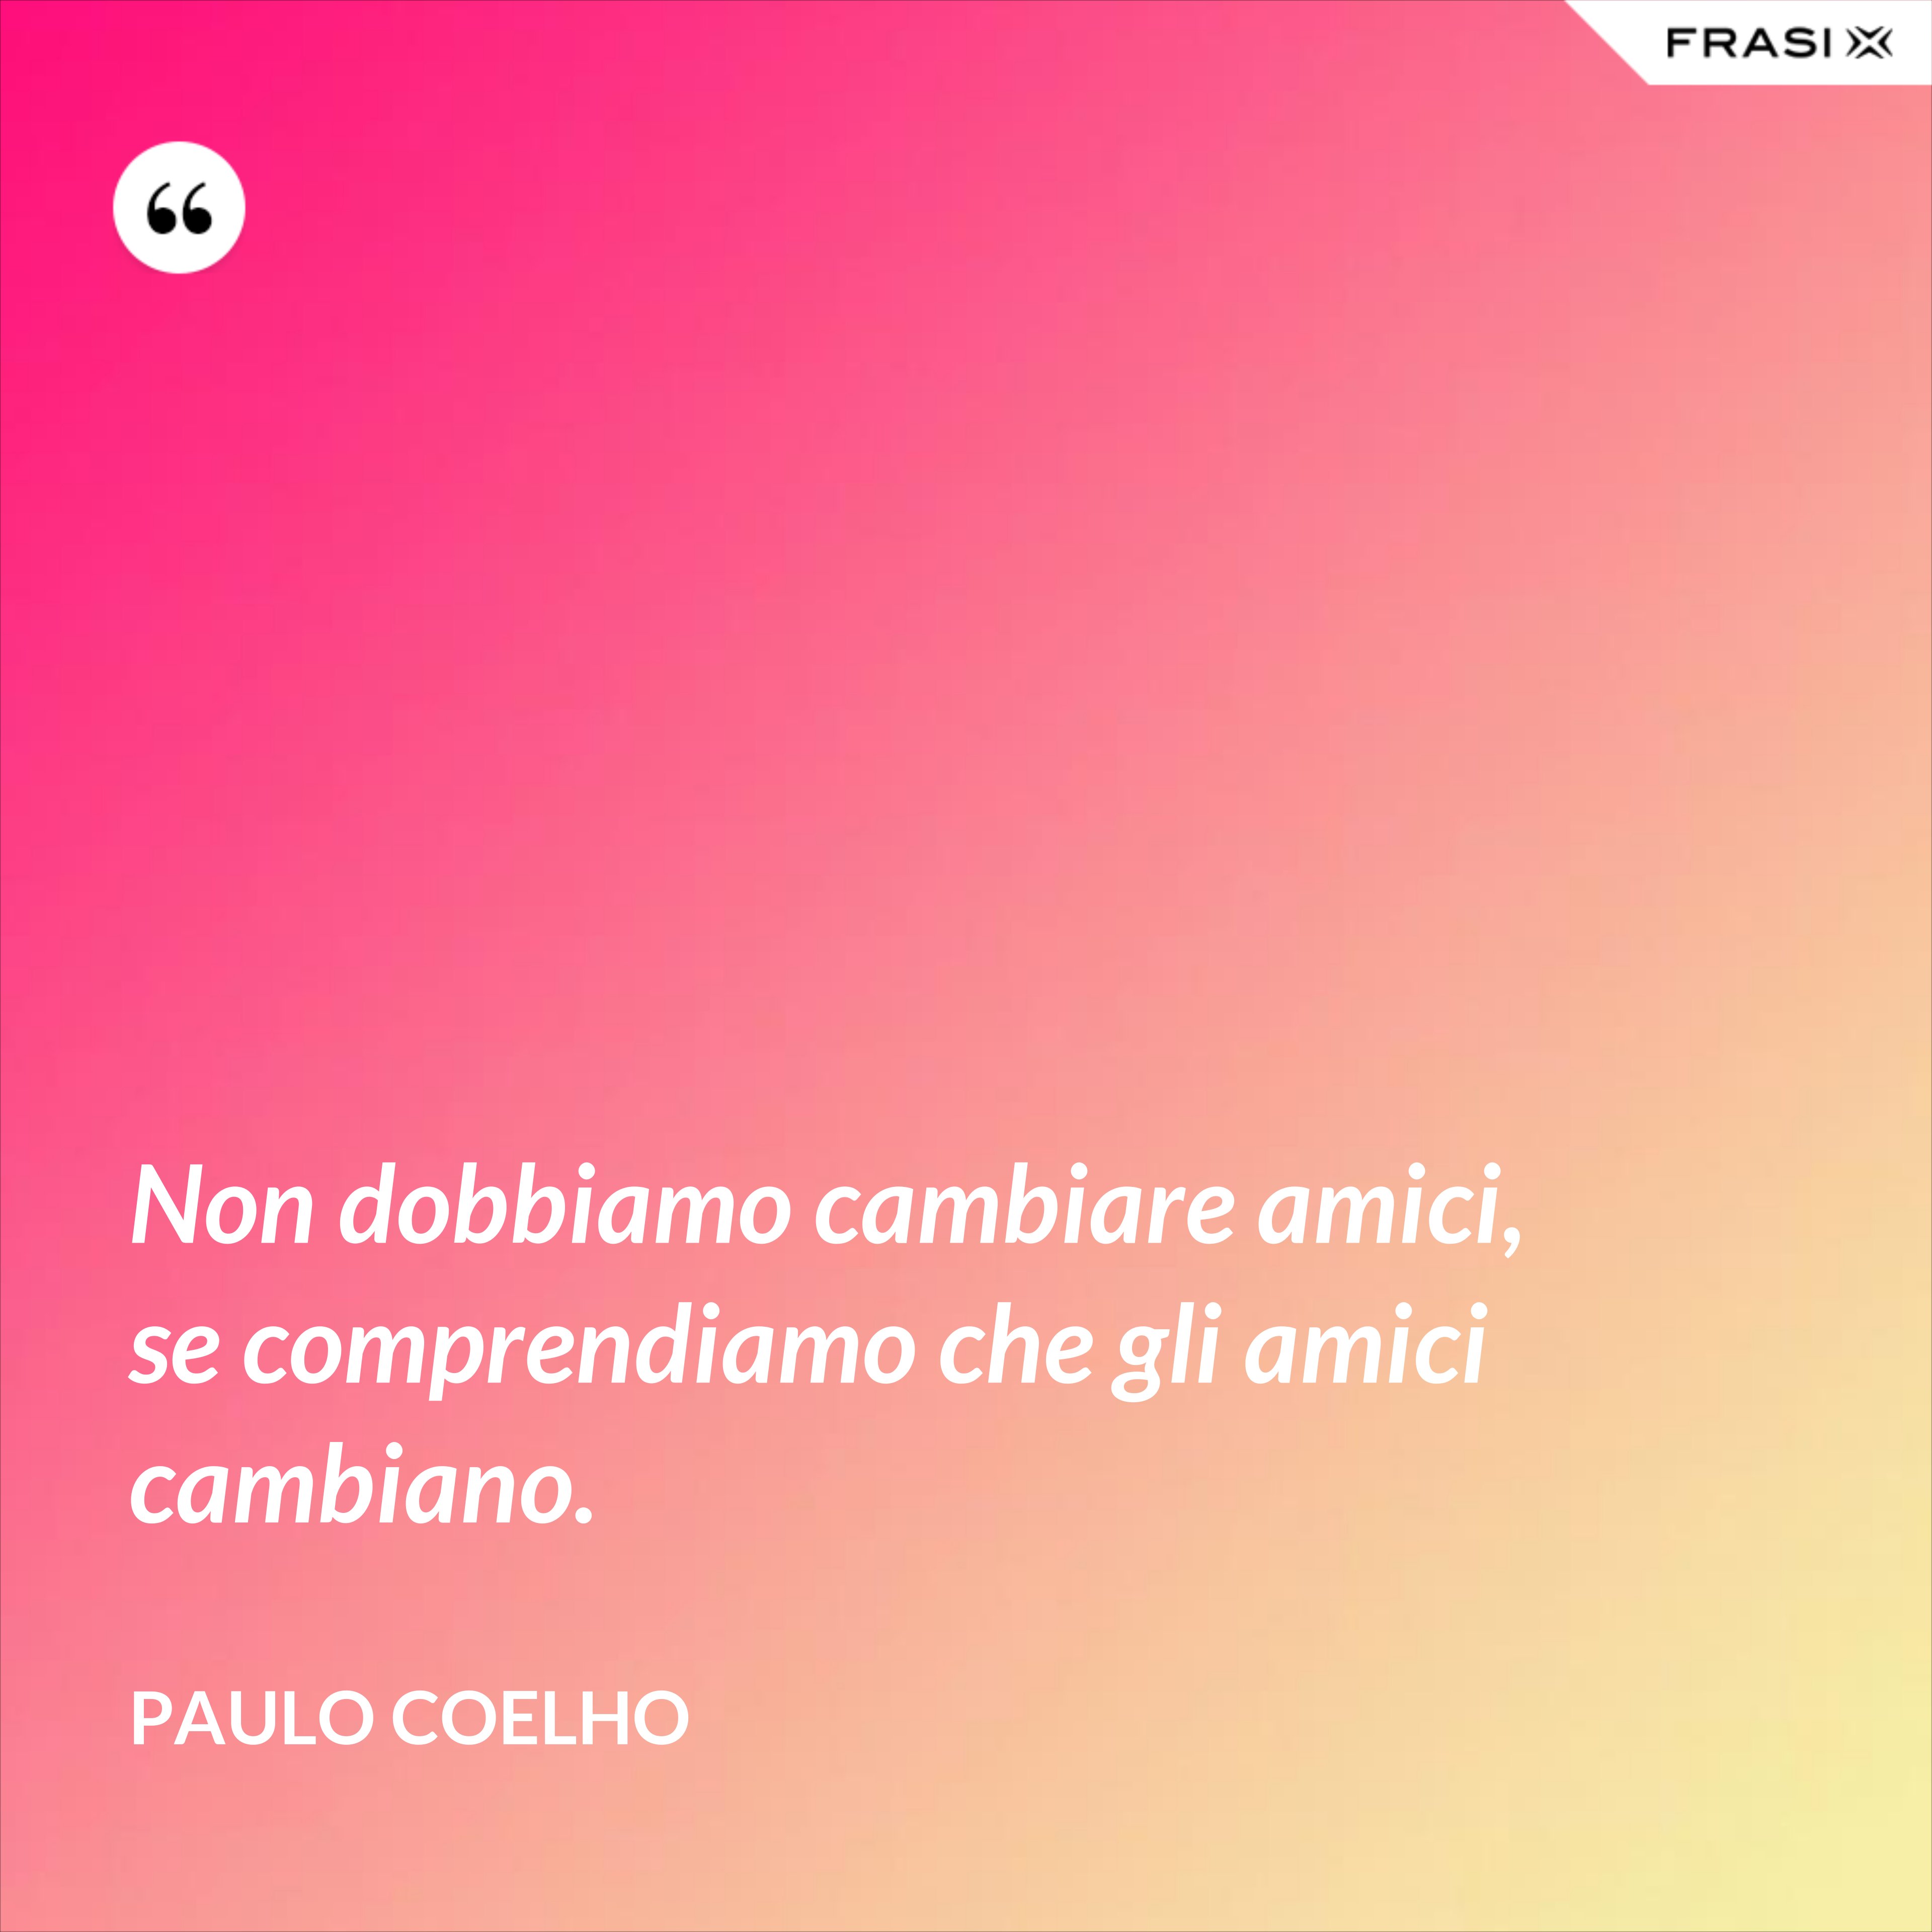 Non dobbiamo cambiare amici, se comprendiamo che gli amici cambiano. - Paulo Coelho